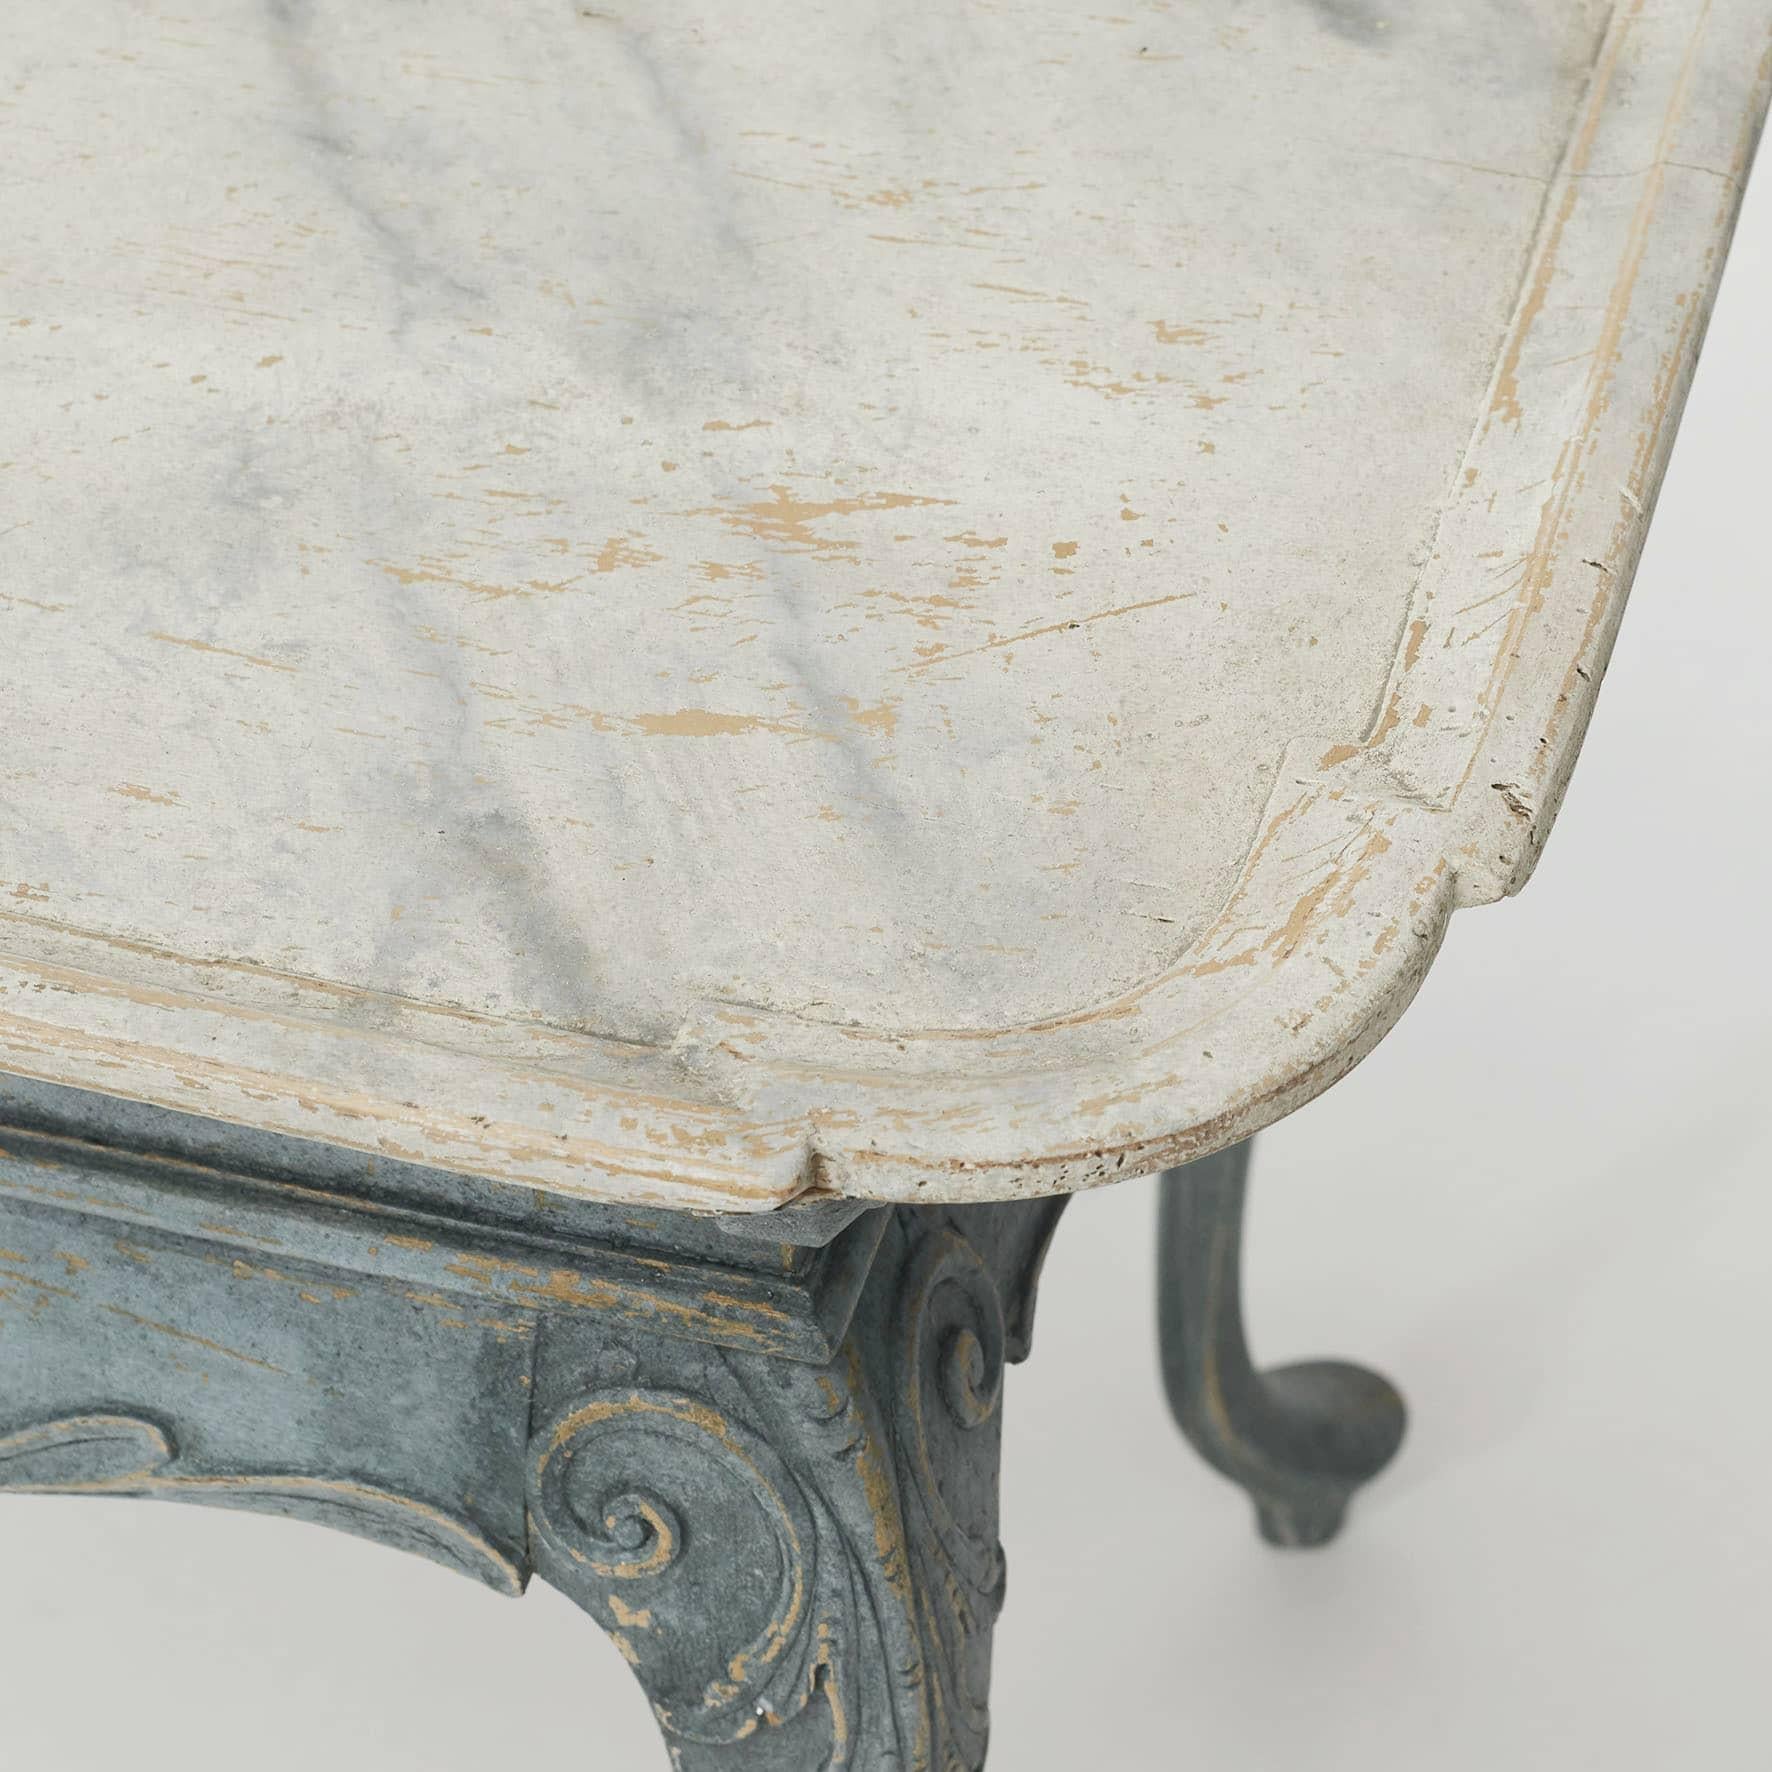 Oak Antique Danish Rococo Tray Table, C. 1770 For Sale